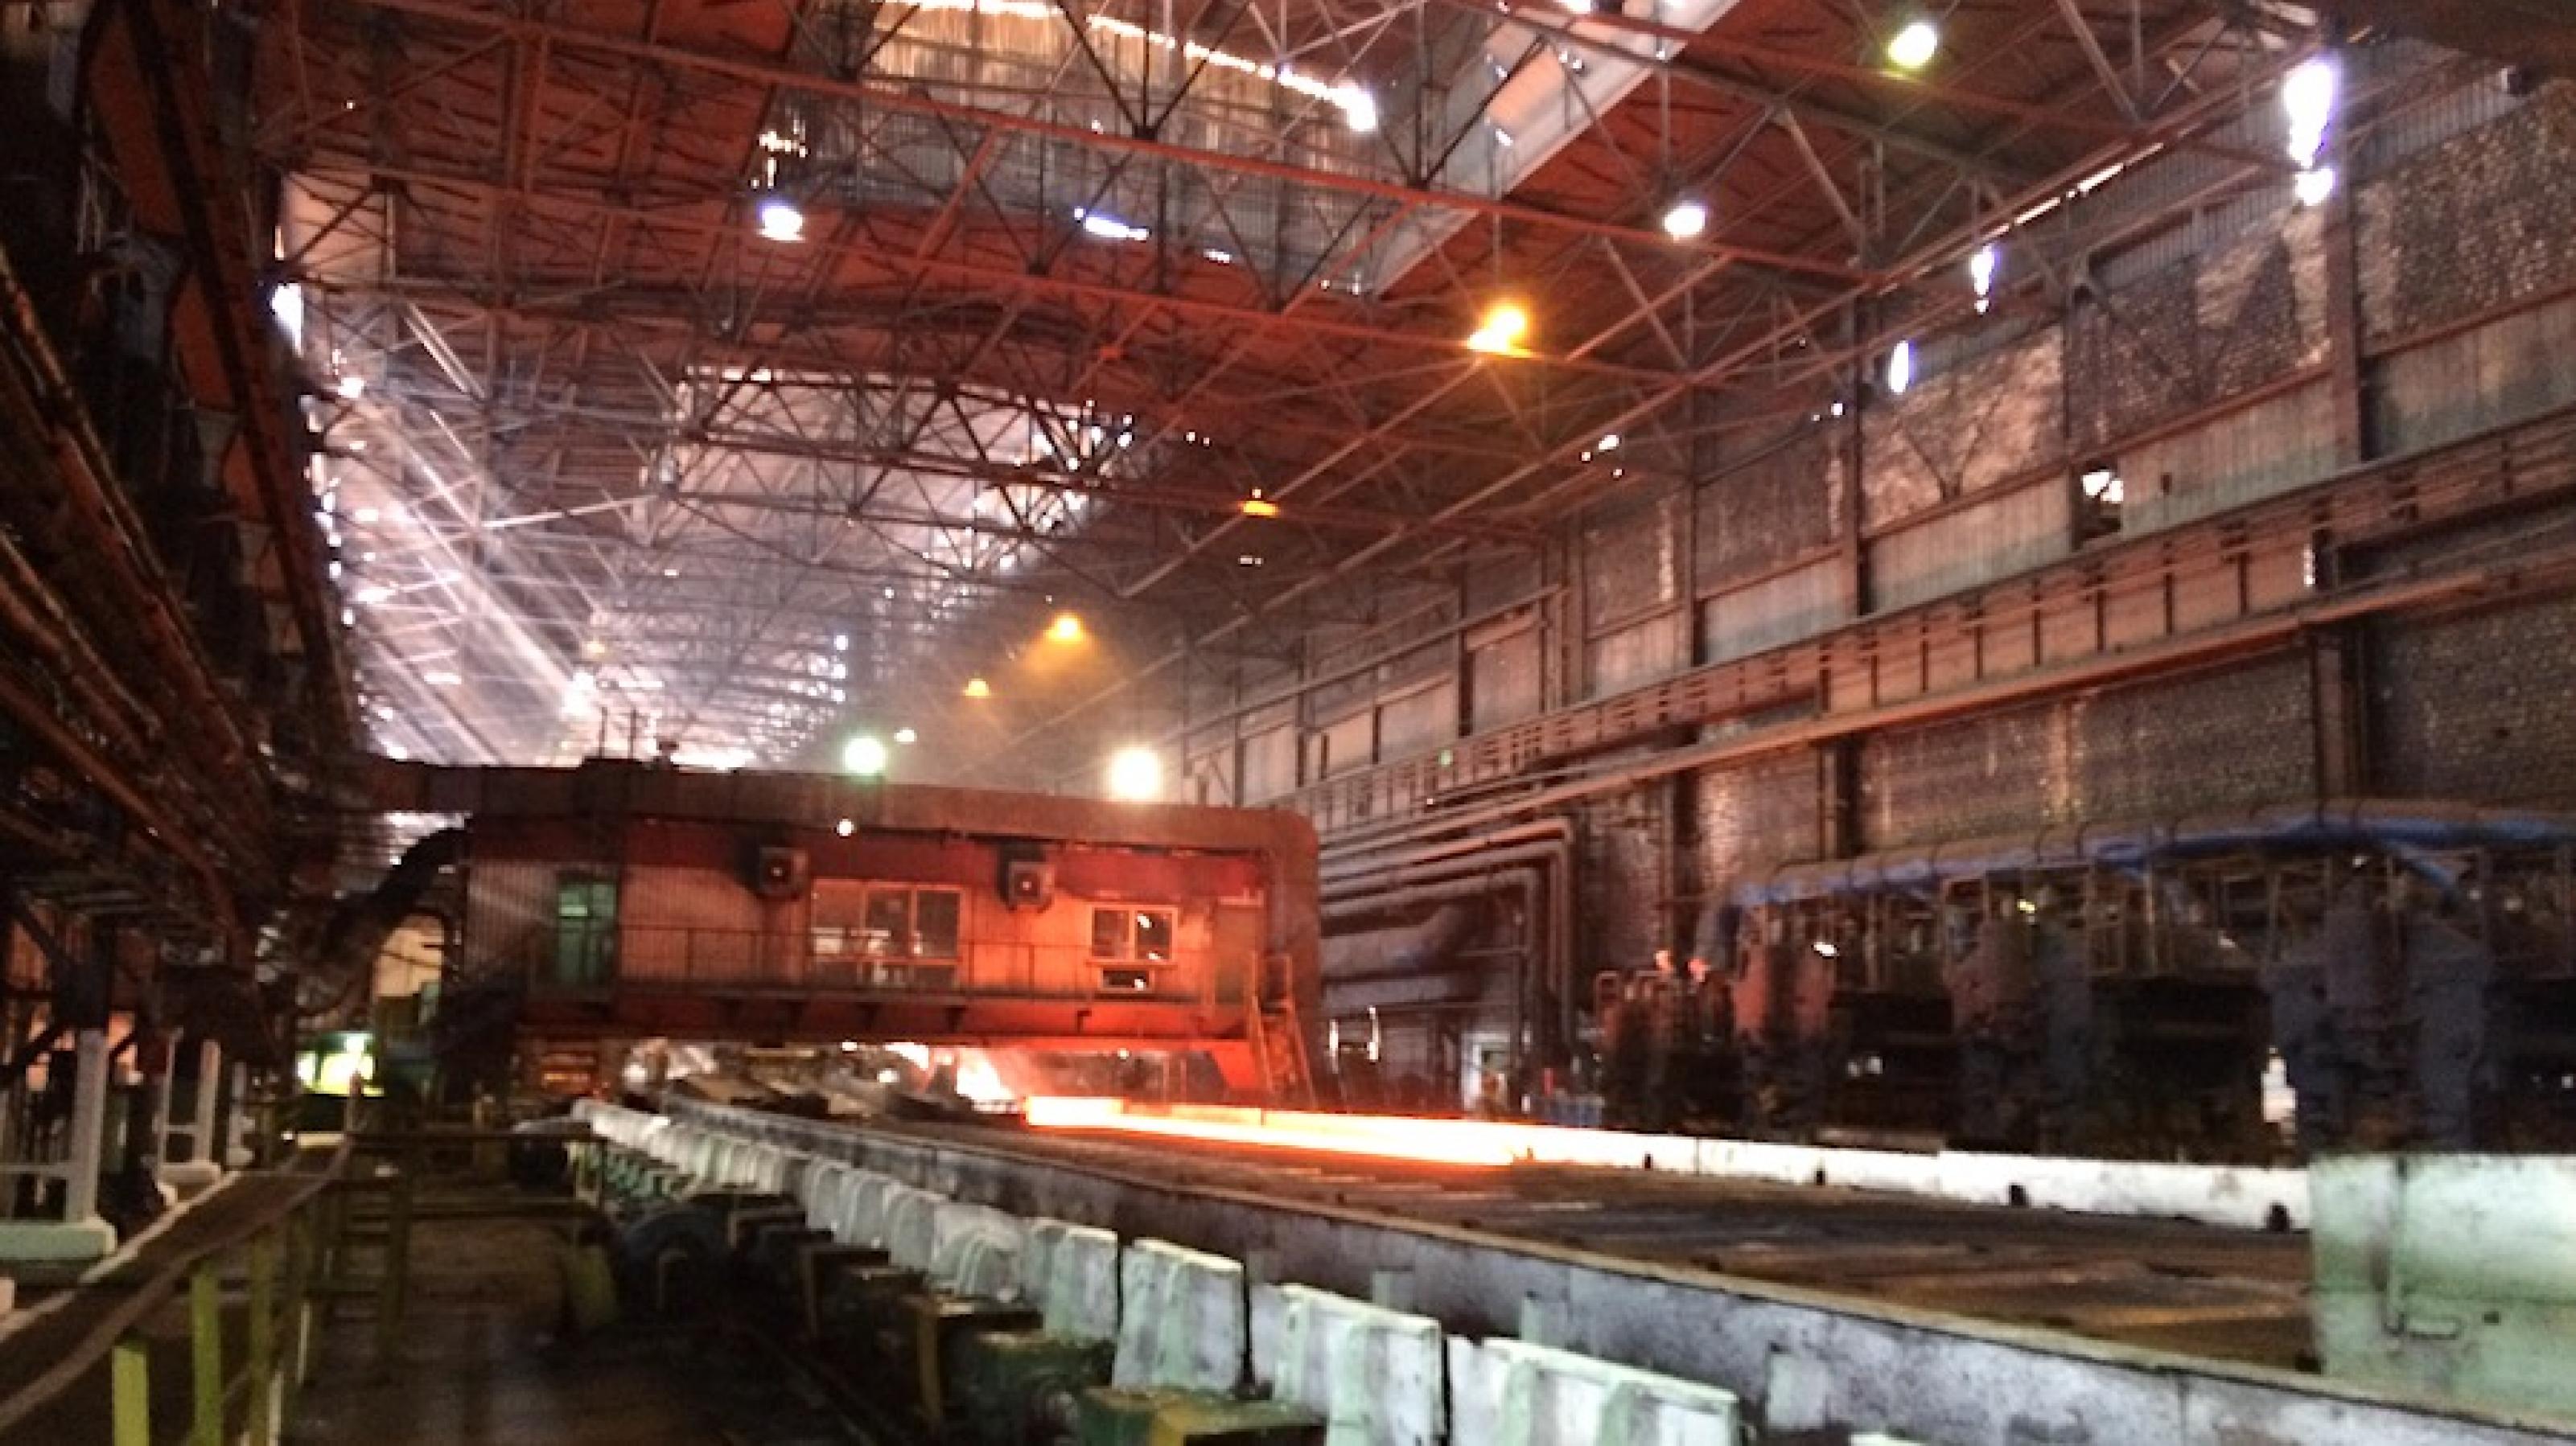 Blick in eine Produktionshalle von Asowstal, im Hintergrund wird glühender Stahl verarbeitet.